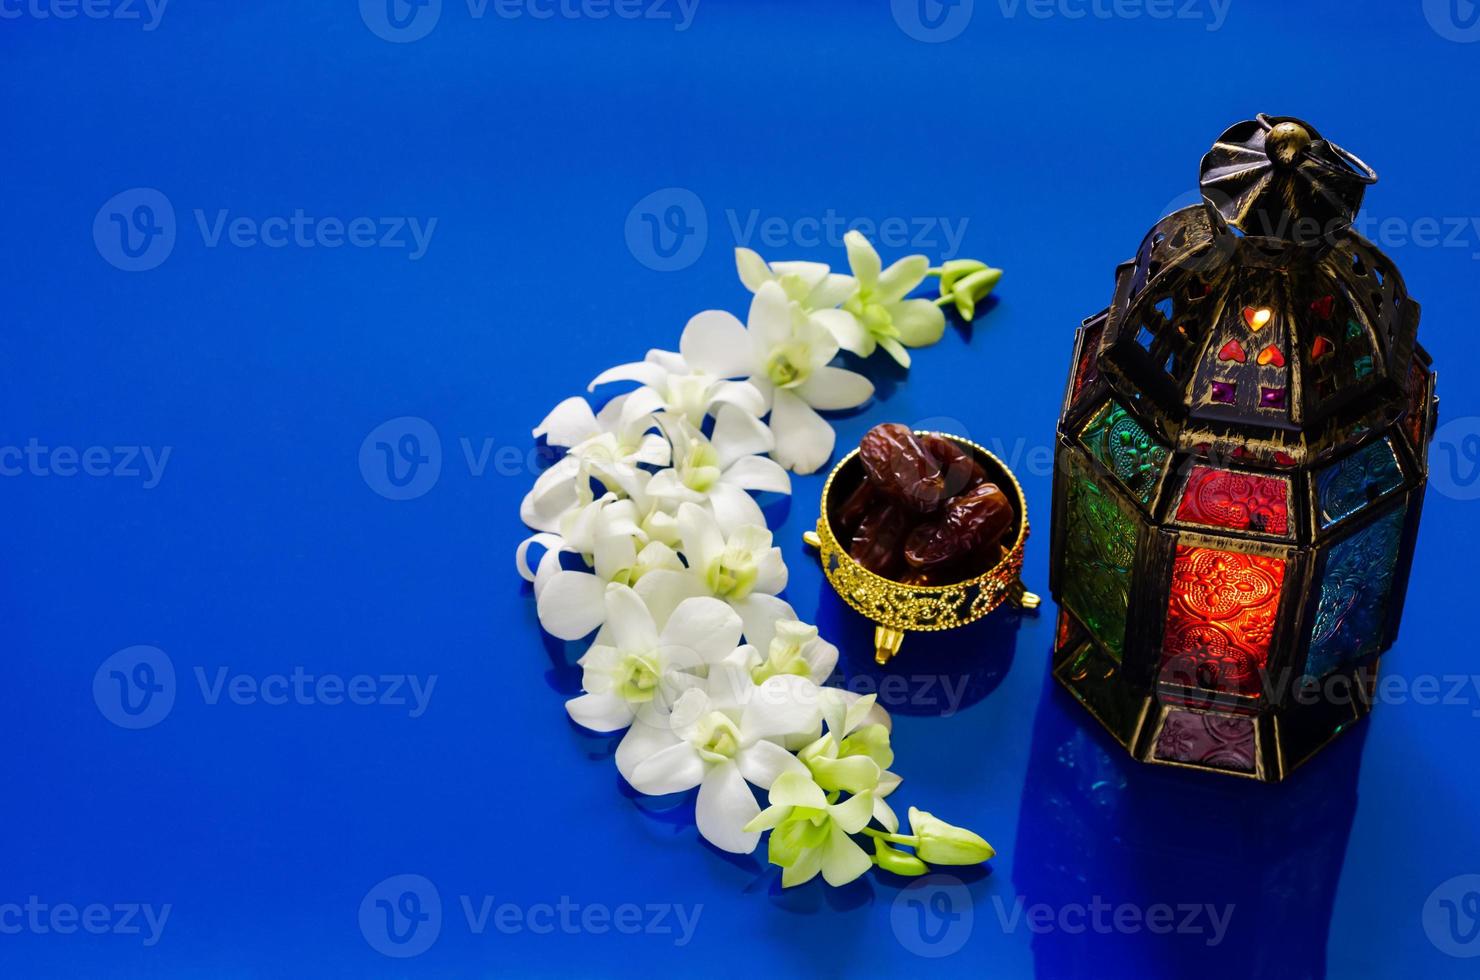 lanterne sur fond bleu avec des fruits de dattes sur une fleur d'orchidée en forme de croissant pour la fête musulmane du mois sacré du ramadan kareem. photo